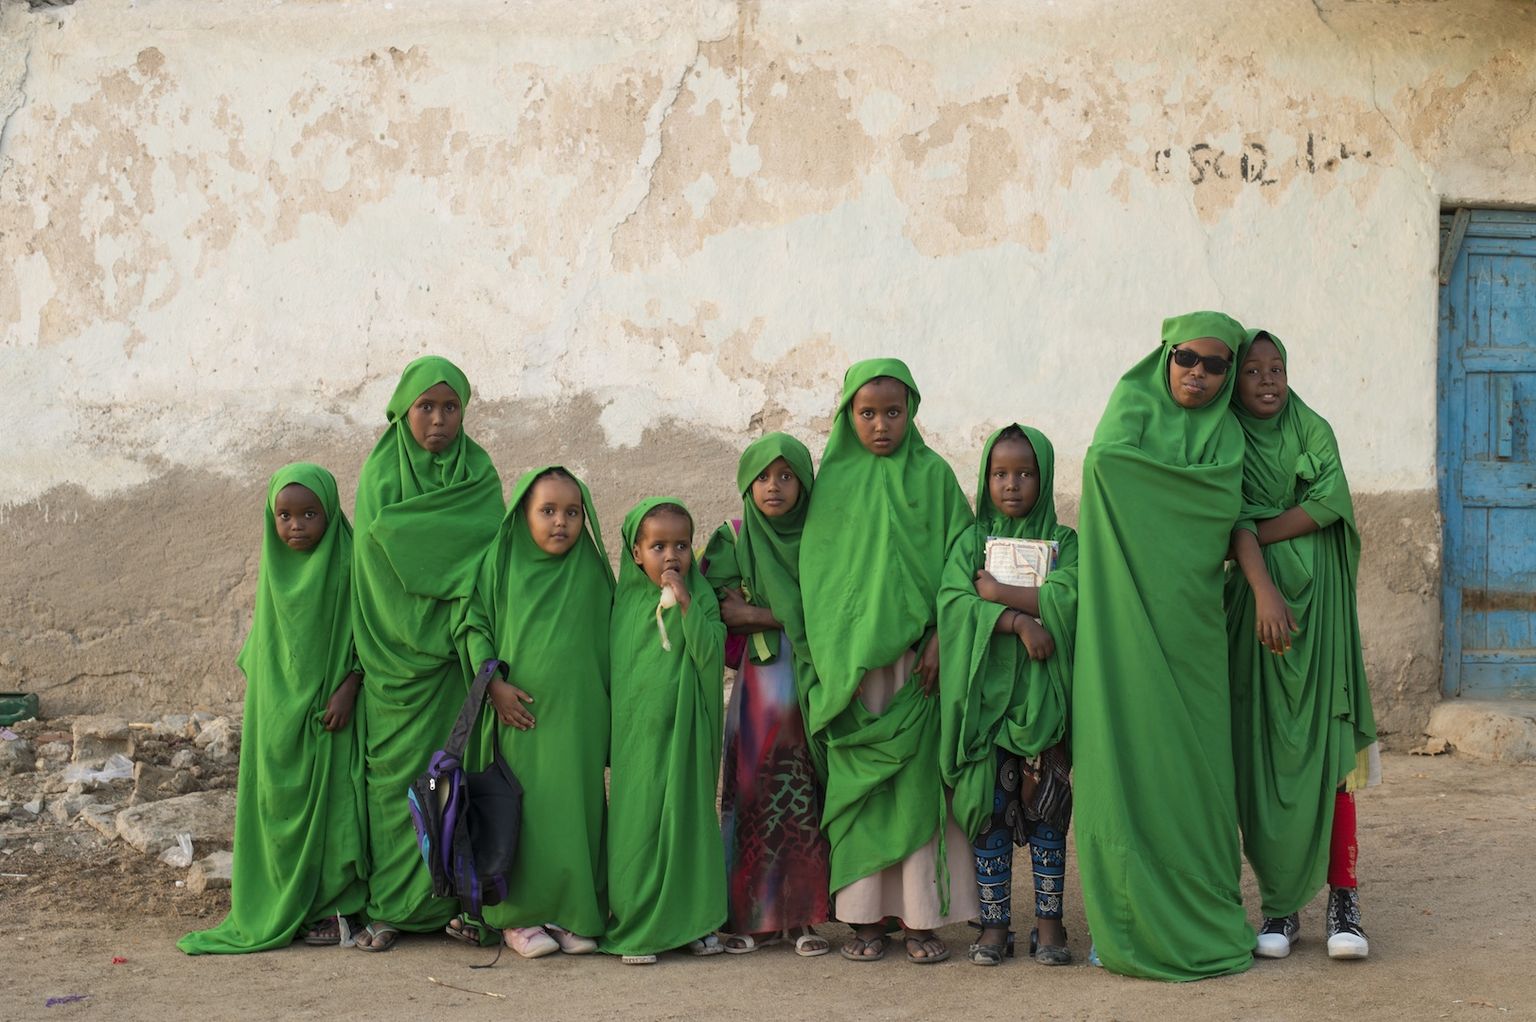 "Somaalimaa koolitüdrukud Berberast" 2018